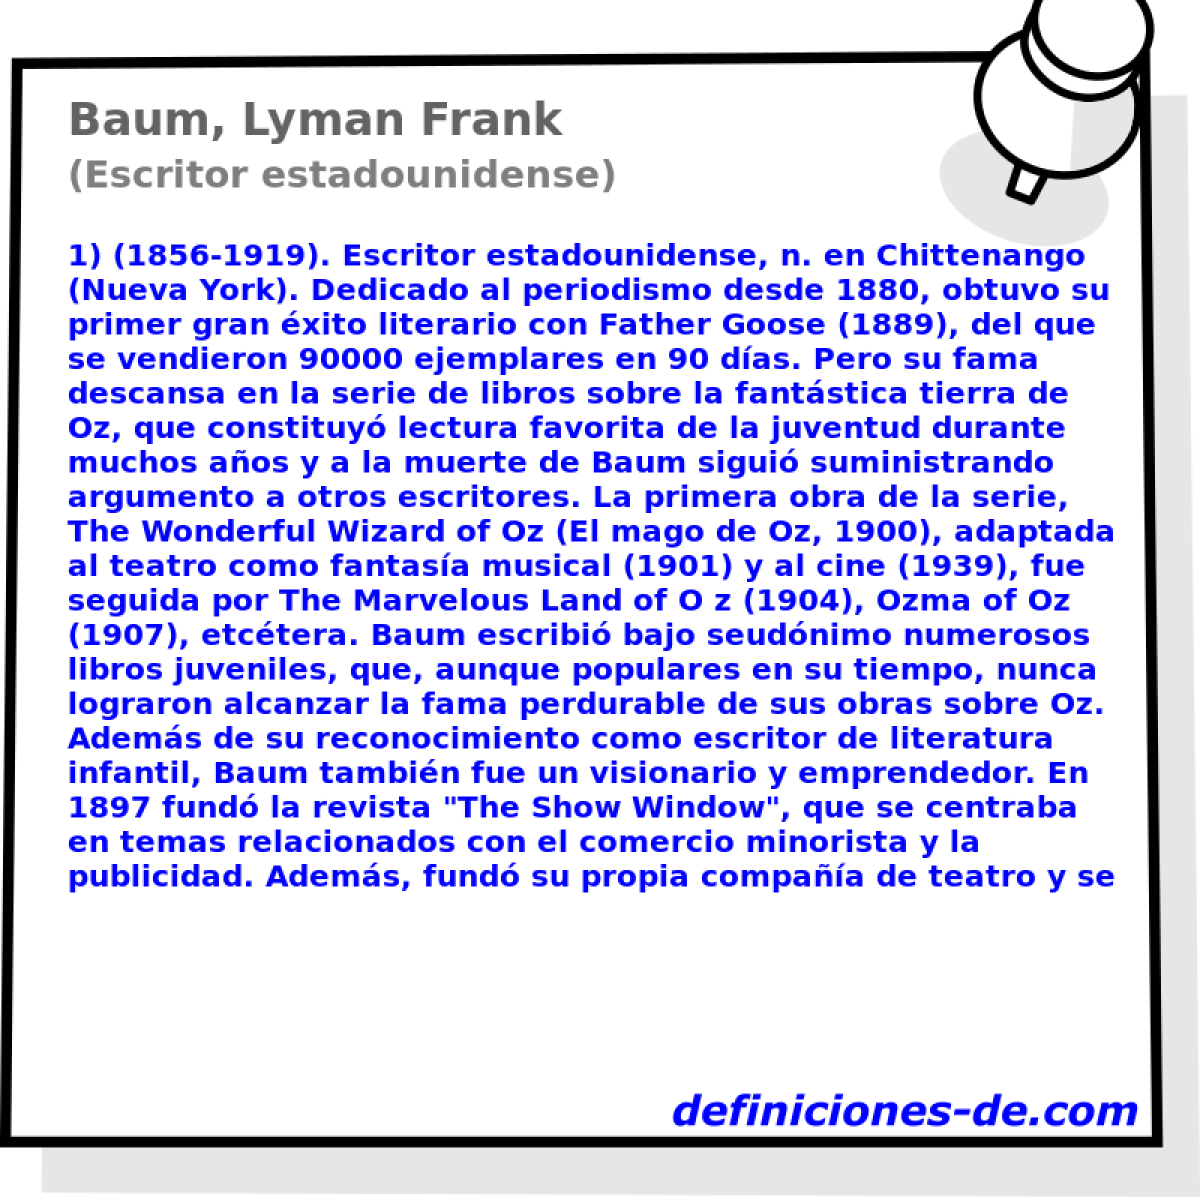 Baum, Lyman Frank (Escritor estadounidense)